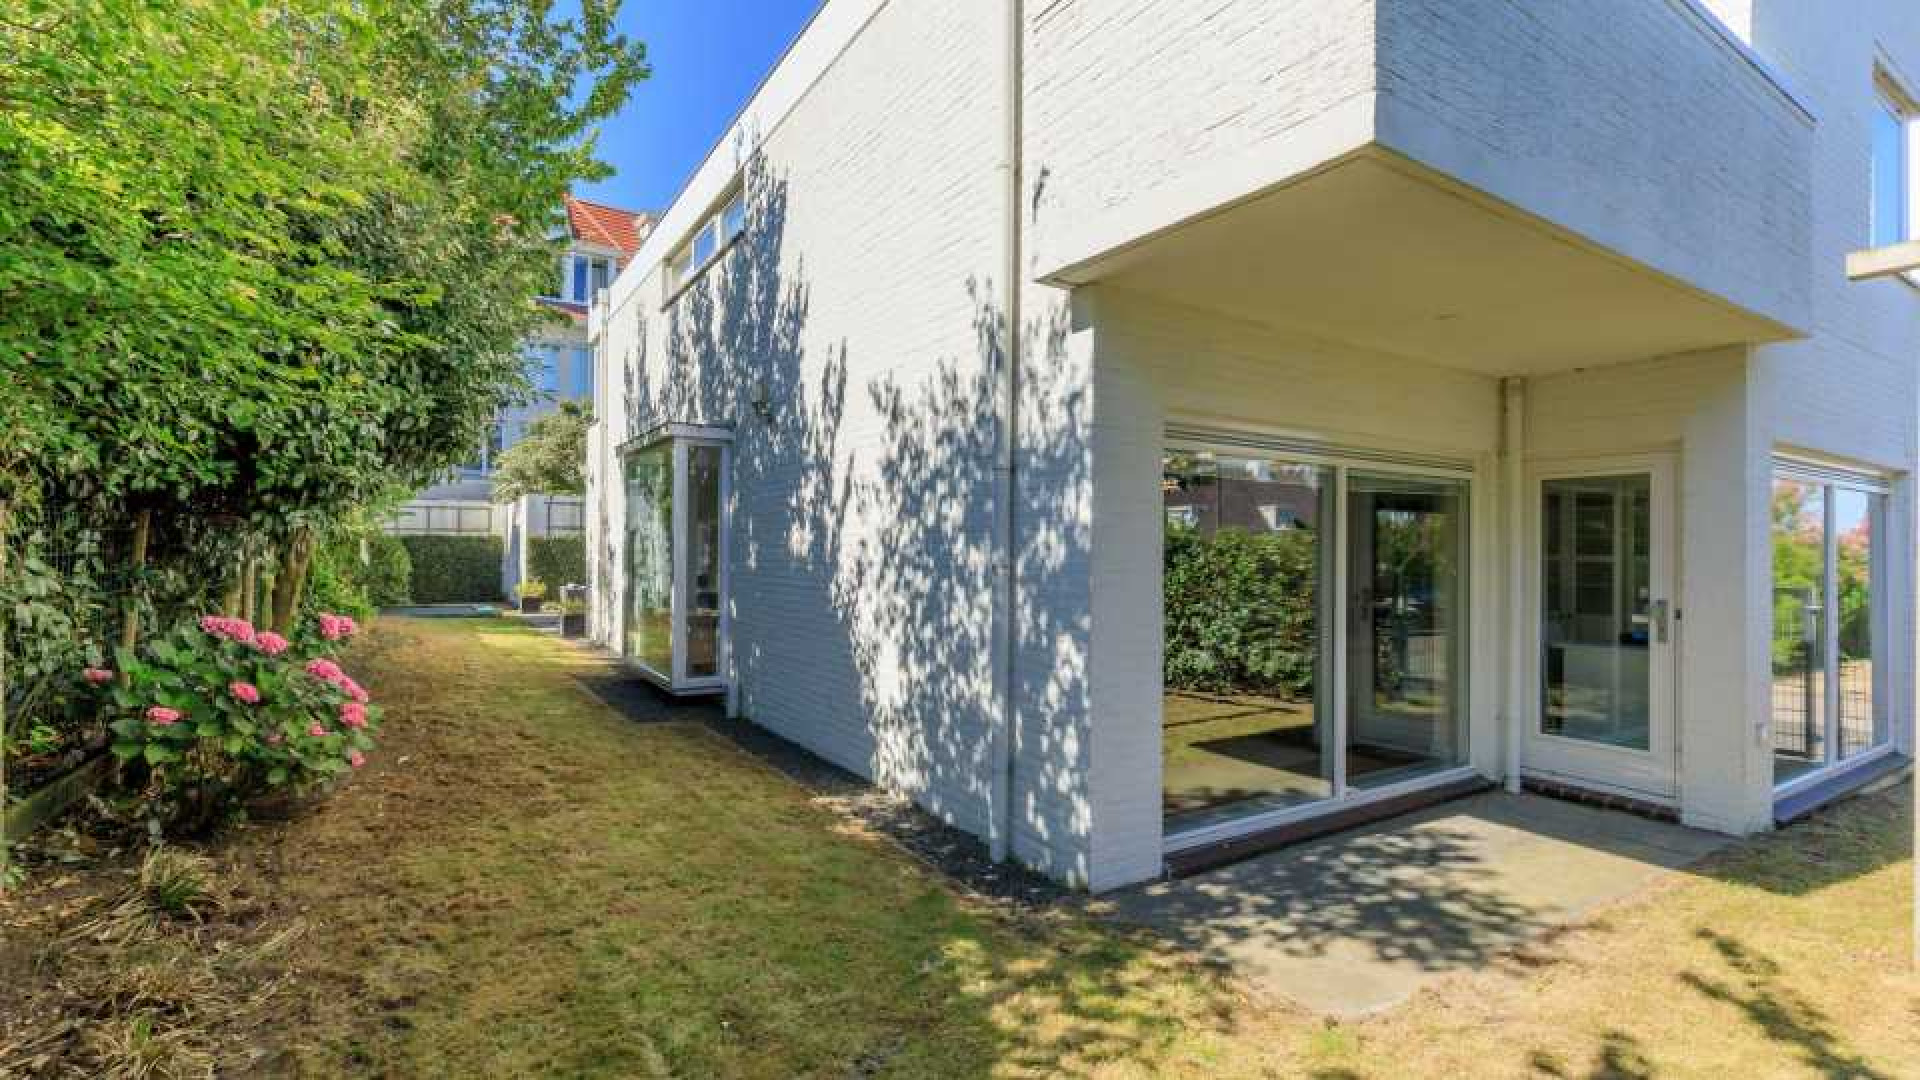 Prins Pieter Christiaan van Vollenhoven zet zijn villa te koop. Zie binnenfoto's 20